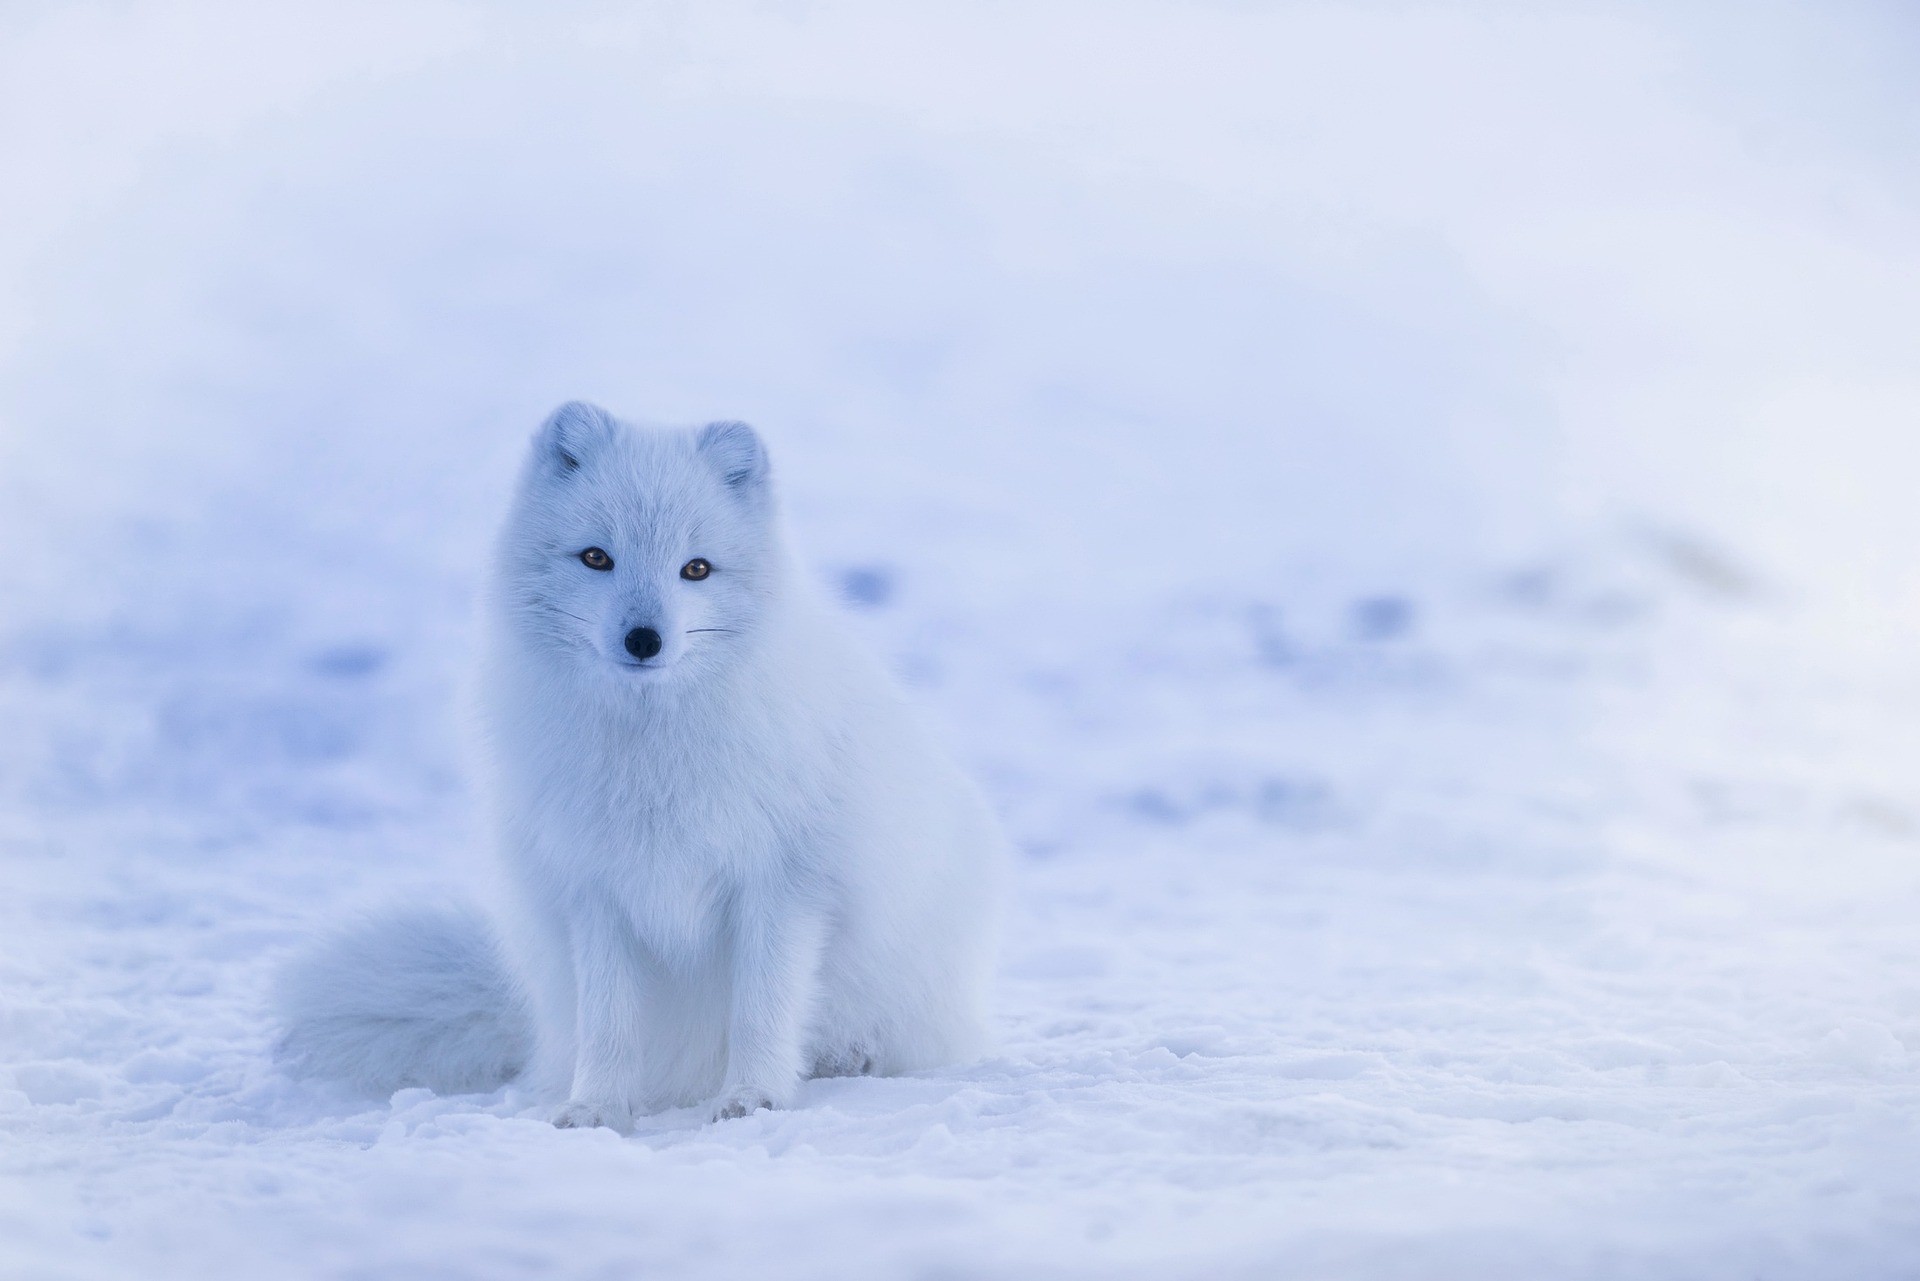 Polarfuchs / Weniger frieren im Winter (Quelle: Pixabay.com)